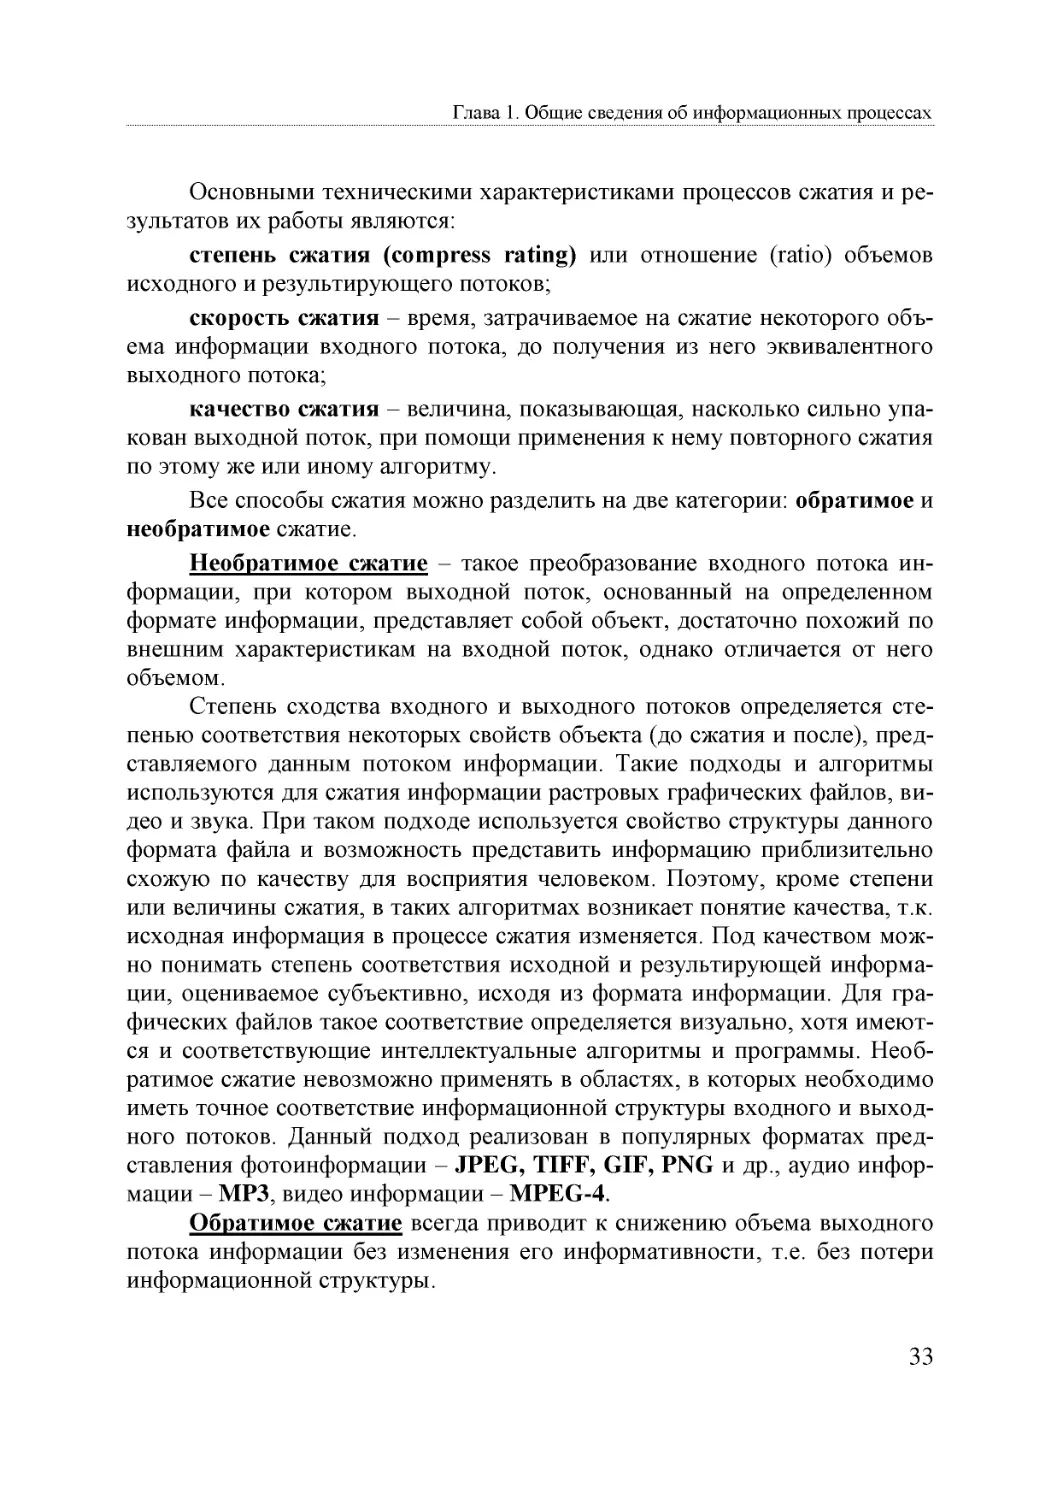 Informatika_Uchebnik_dlya_vuzov_2010 33